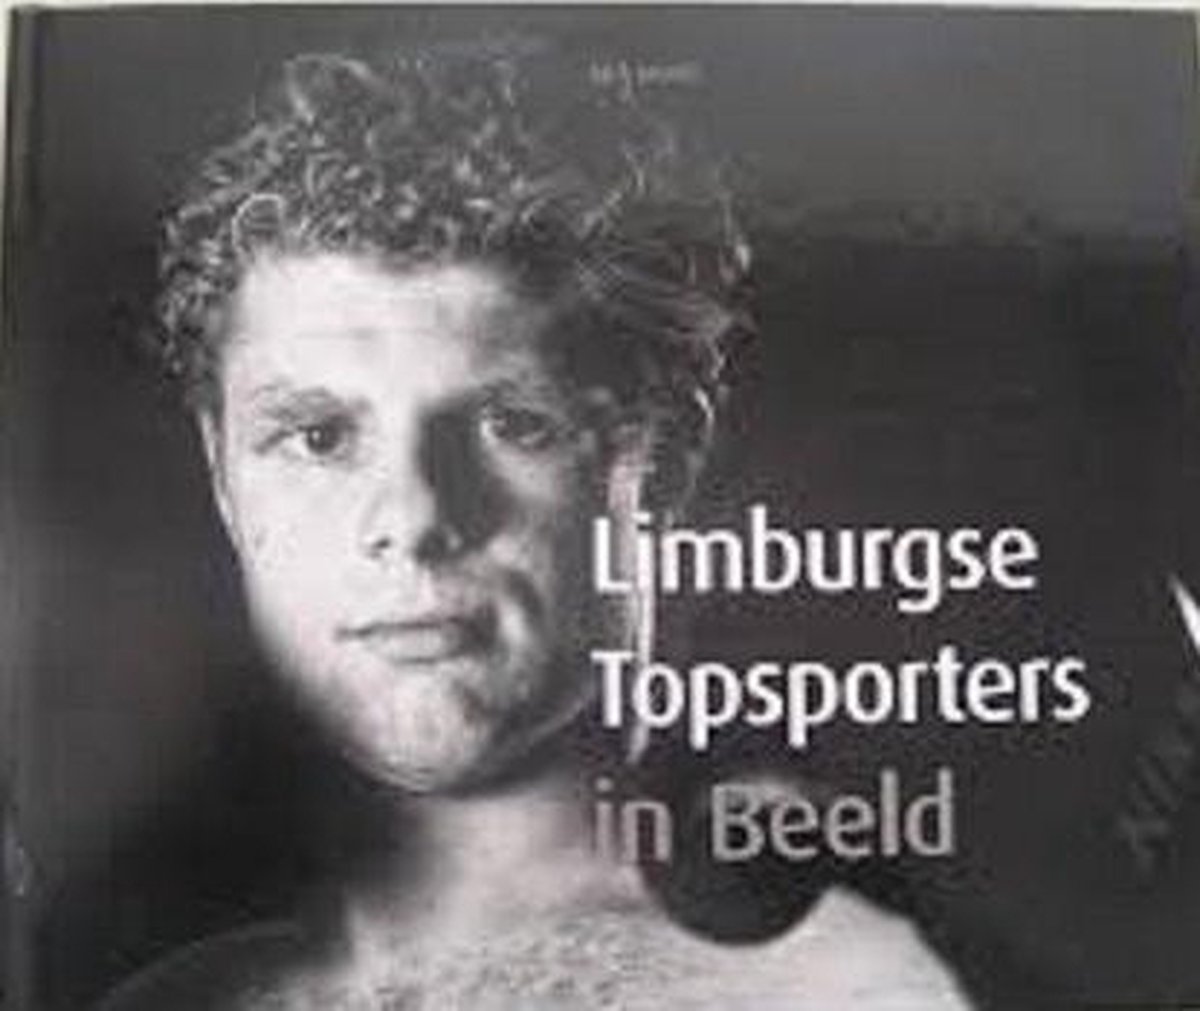 Limburgse Topsporters in Beeld